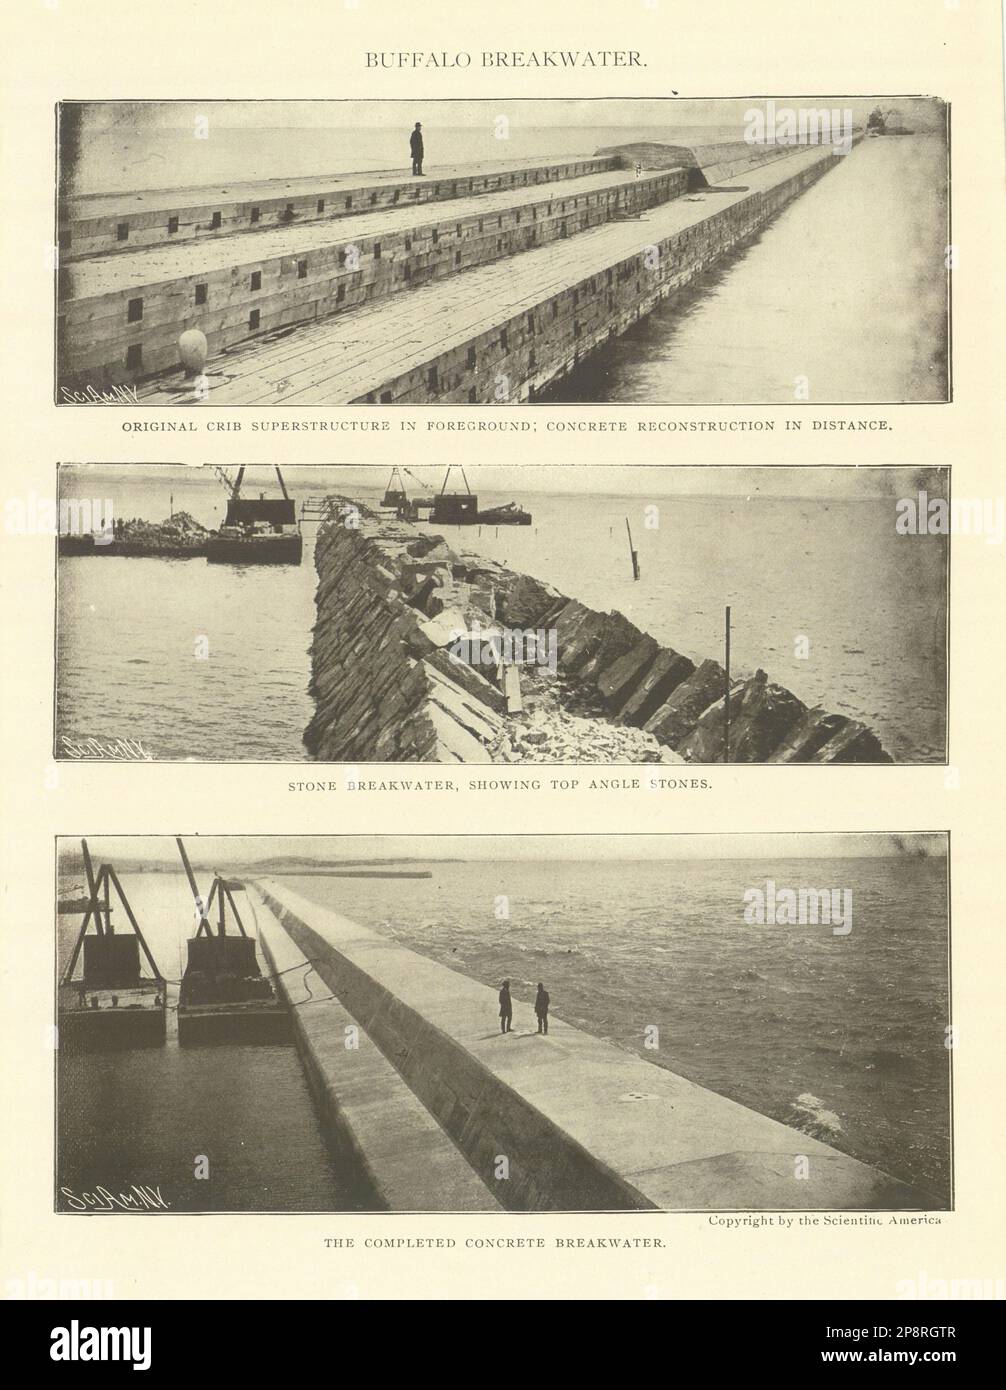 Buffalo Breakwater. Superstructure de berceau. Béton. Pierre angulaire. New York 1907 Banque D'Images